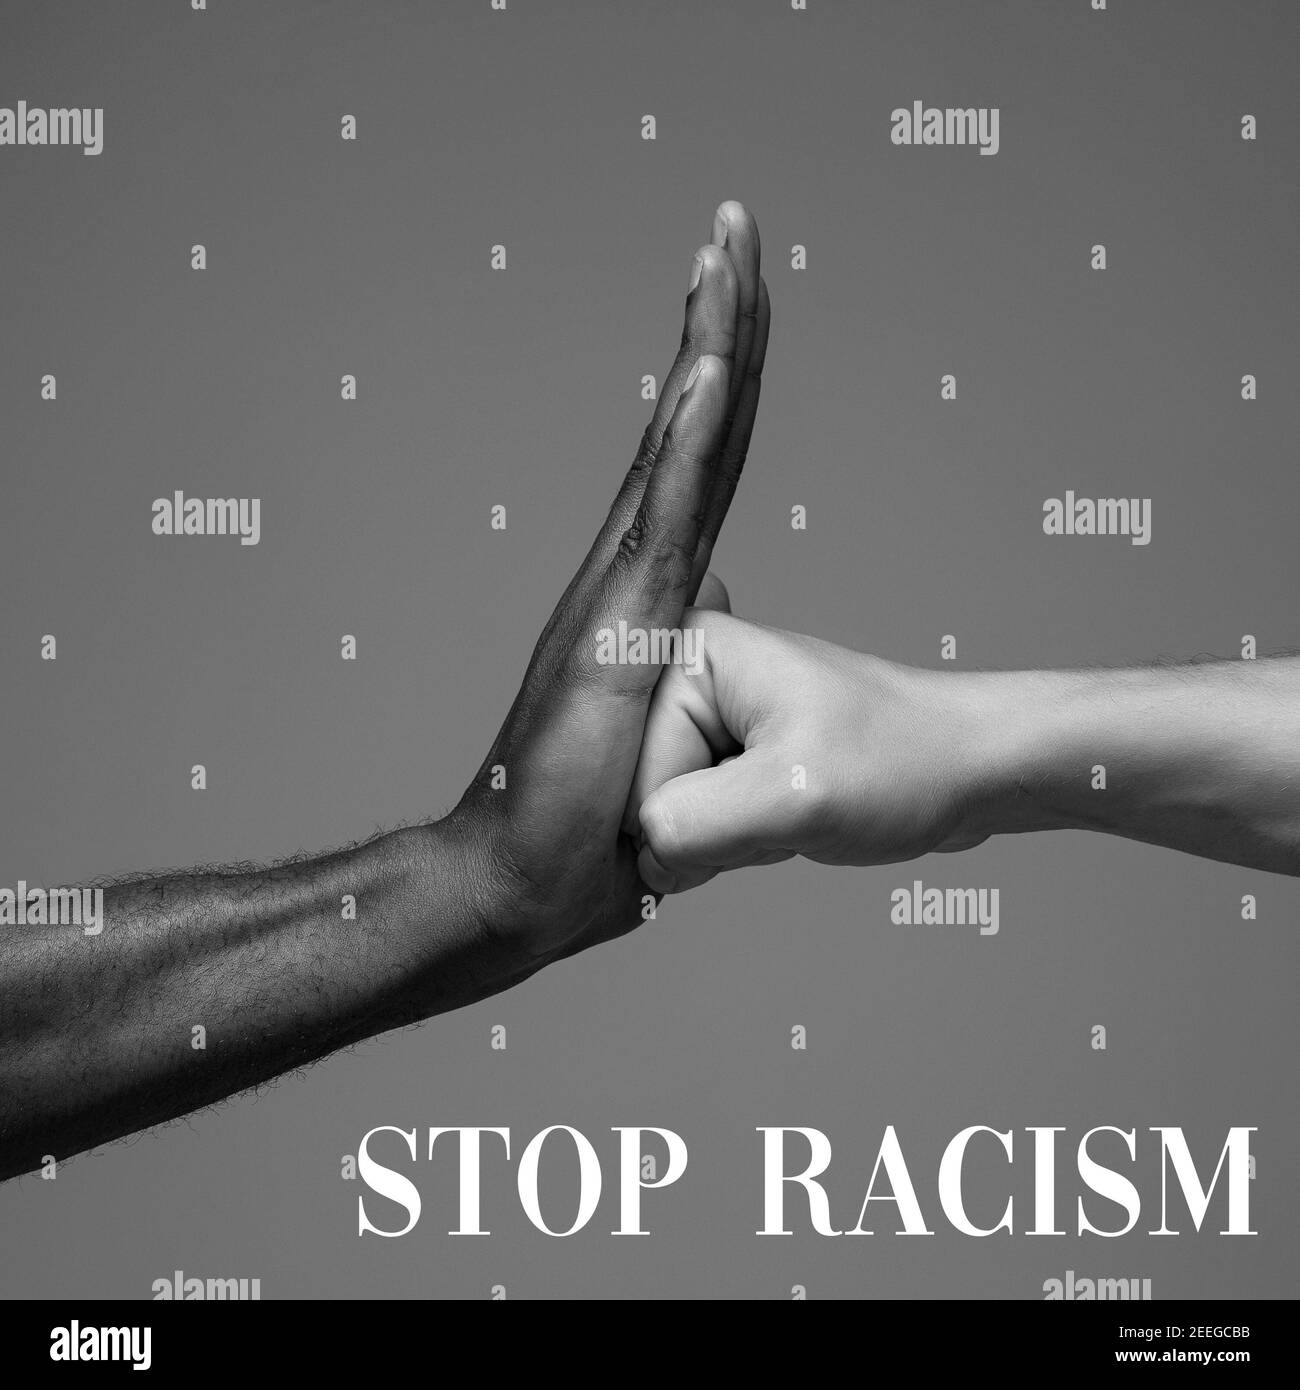 Stoppen Sie Rassismus. Afrikanische und kaukasische Hände gestikulieren auf grauem Studiohintergrund. Toleranz und Gleichheit, Einheit, Unterstützung, freundlicherweise Koexistenz zusammen Konzept. Weltweite multirassische Gemeinschaft. Stockfoto